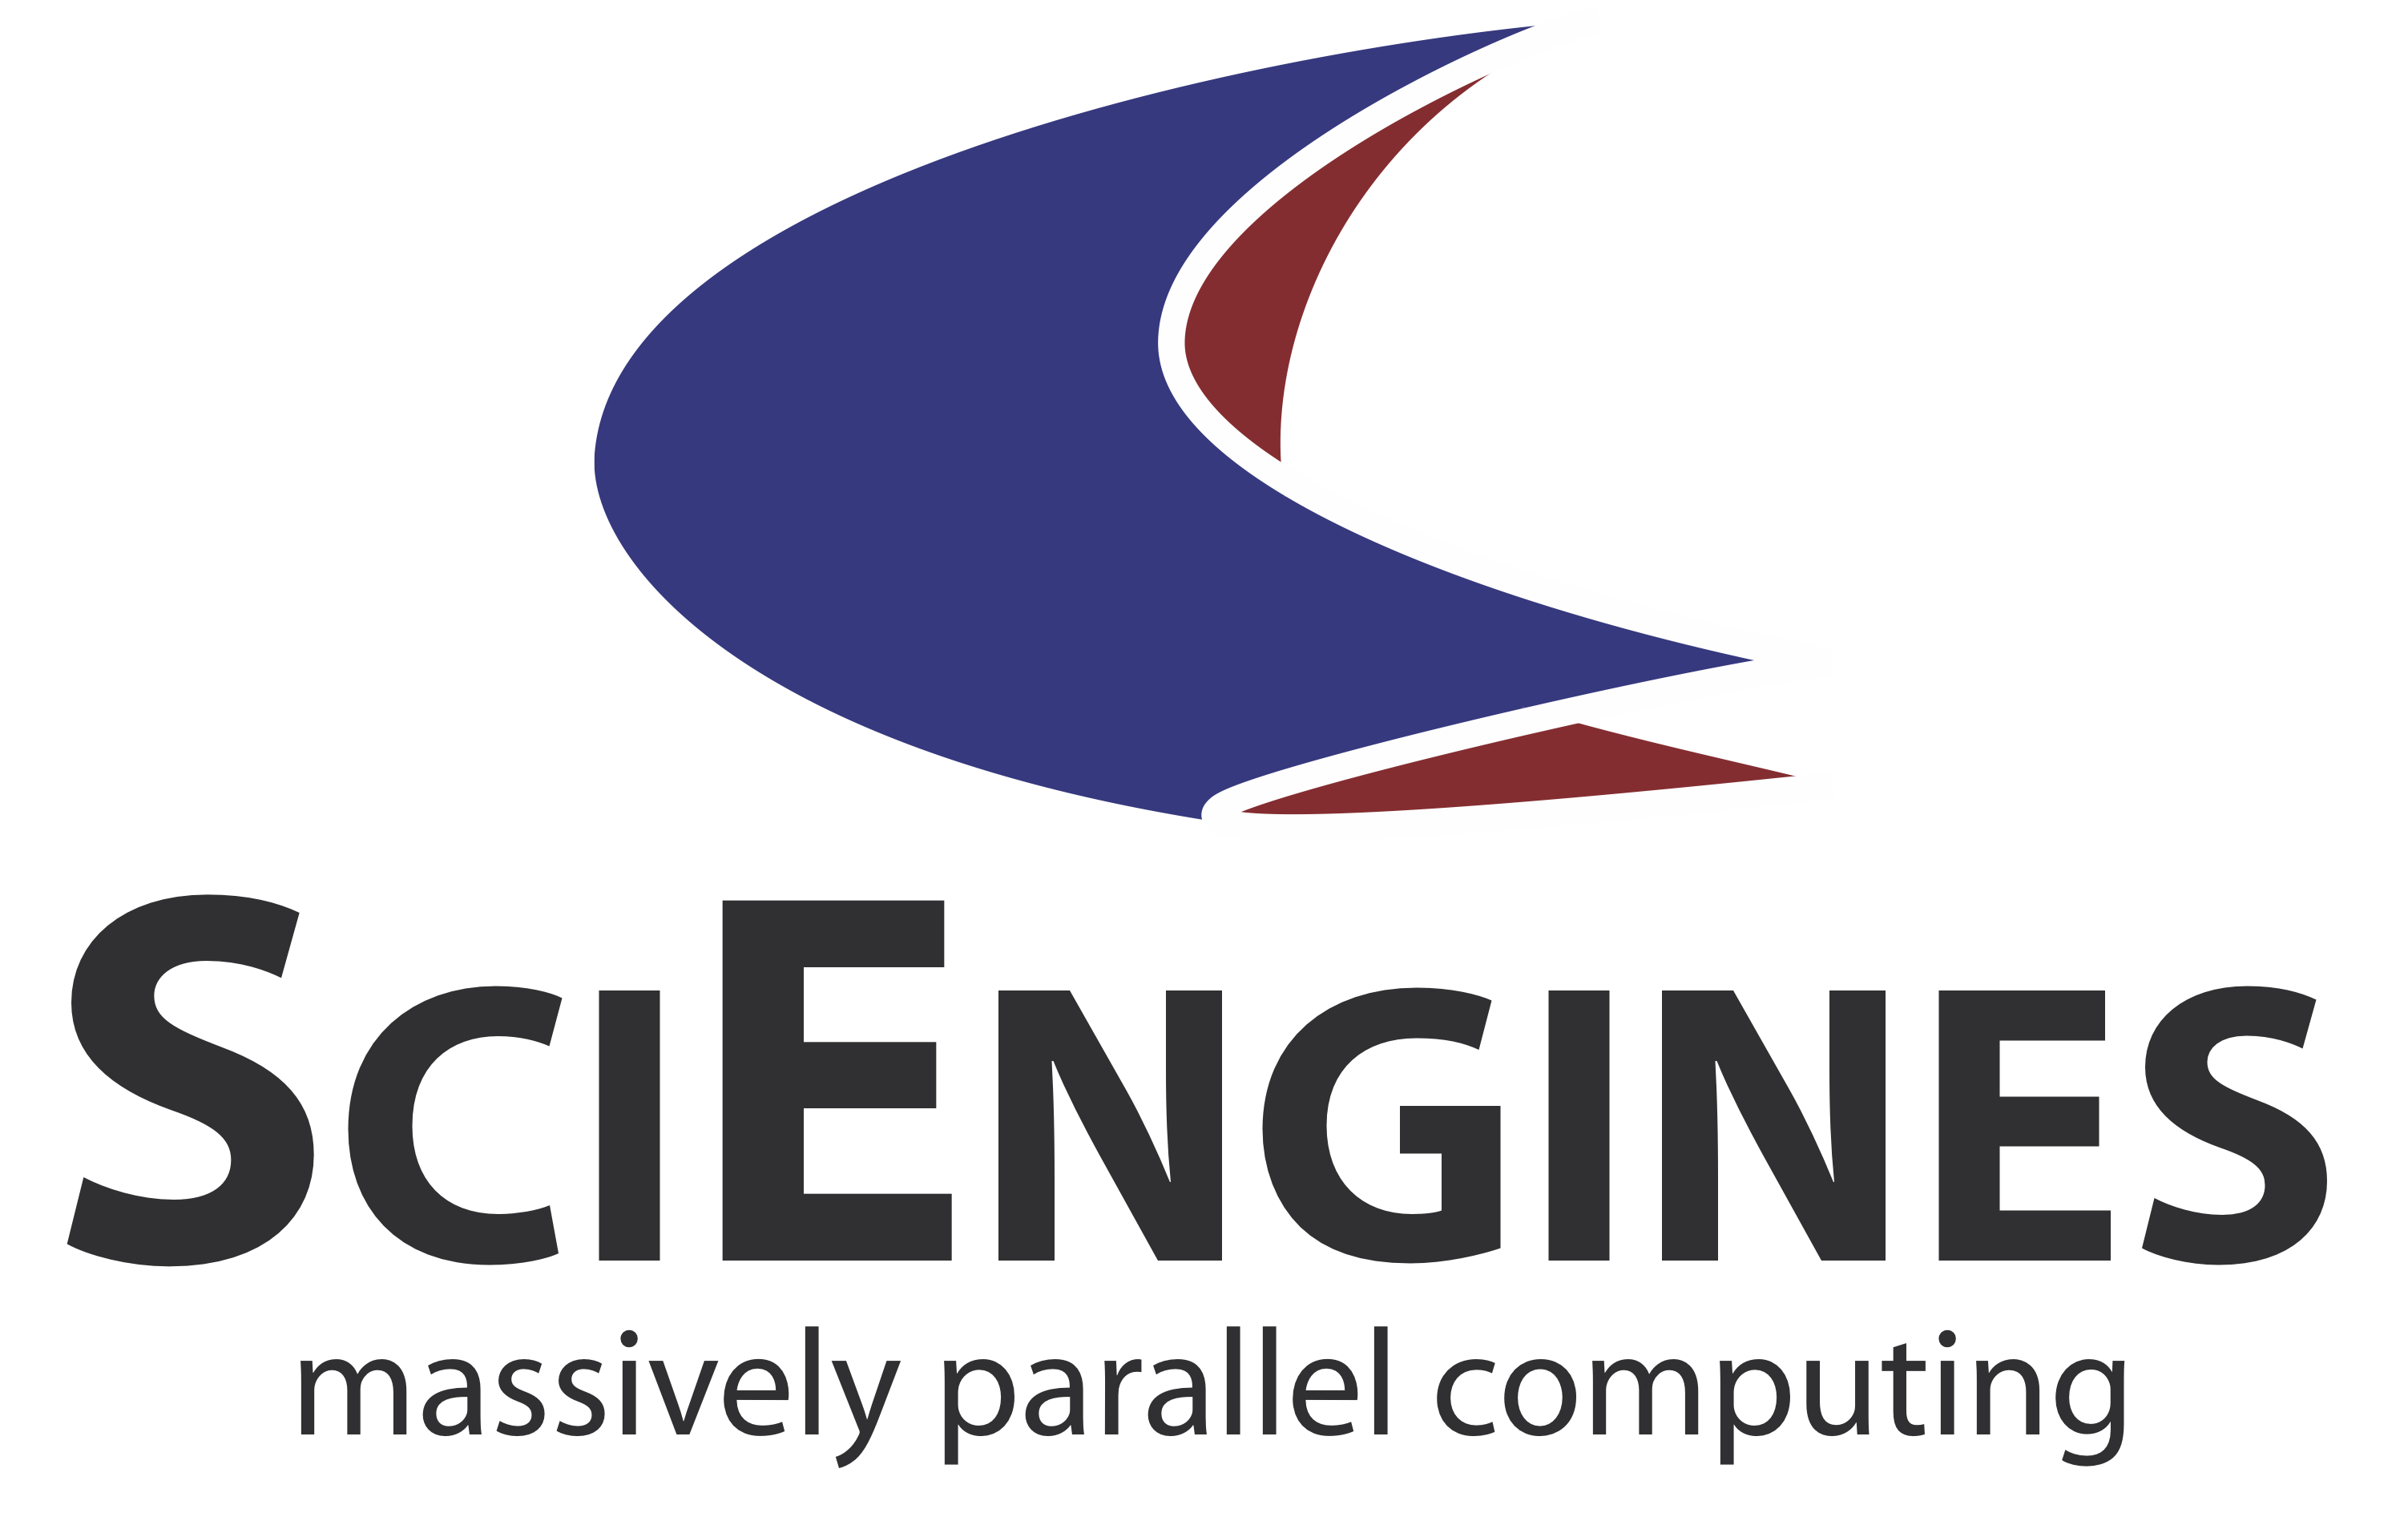 SciEngines GmbH